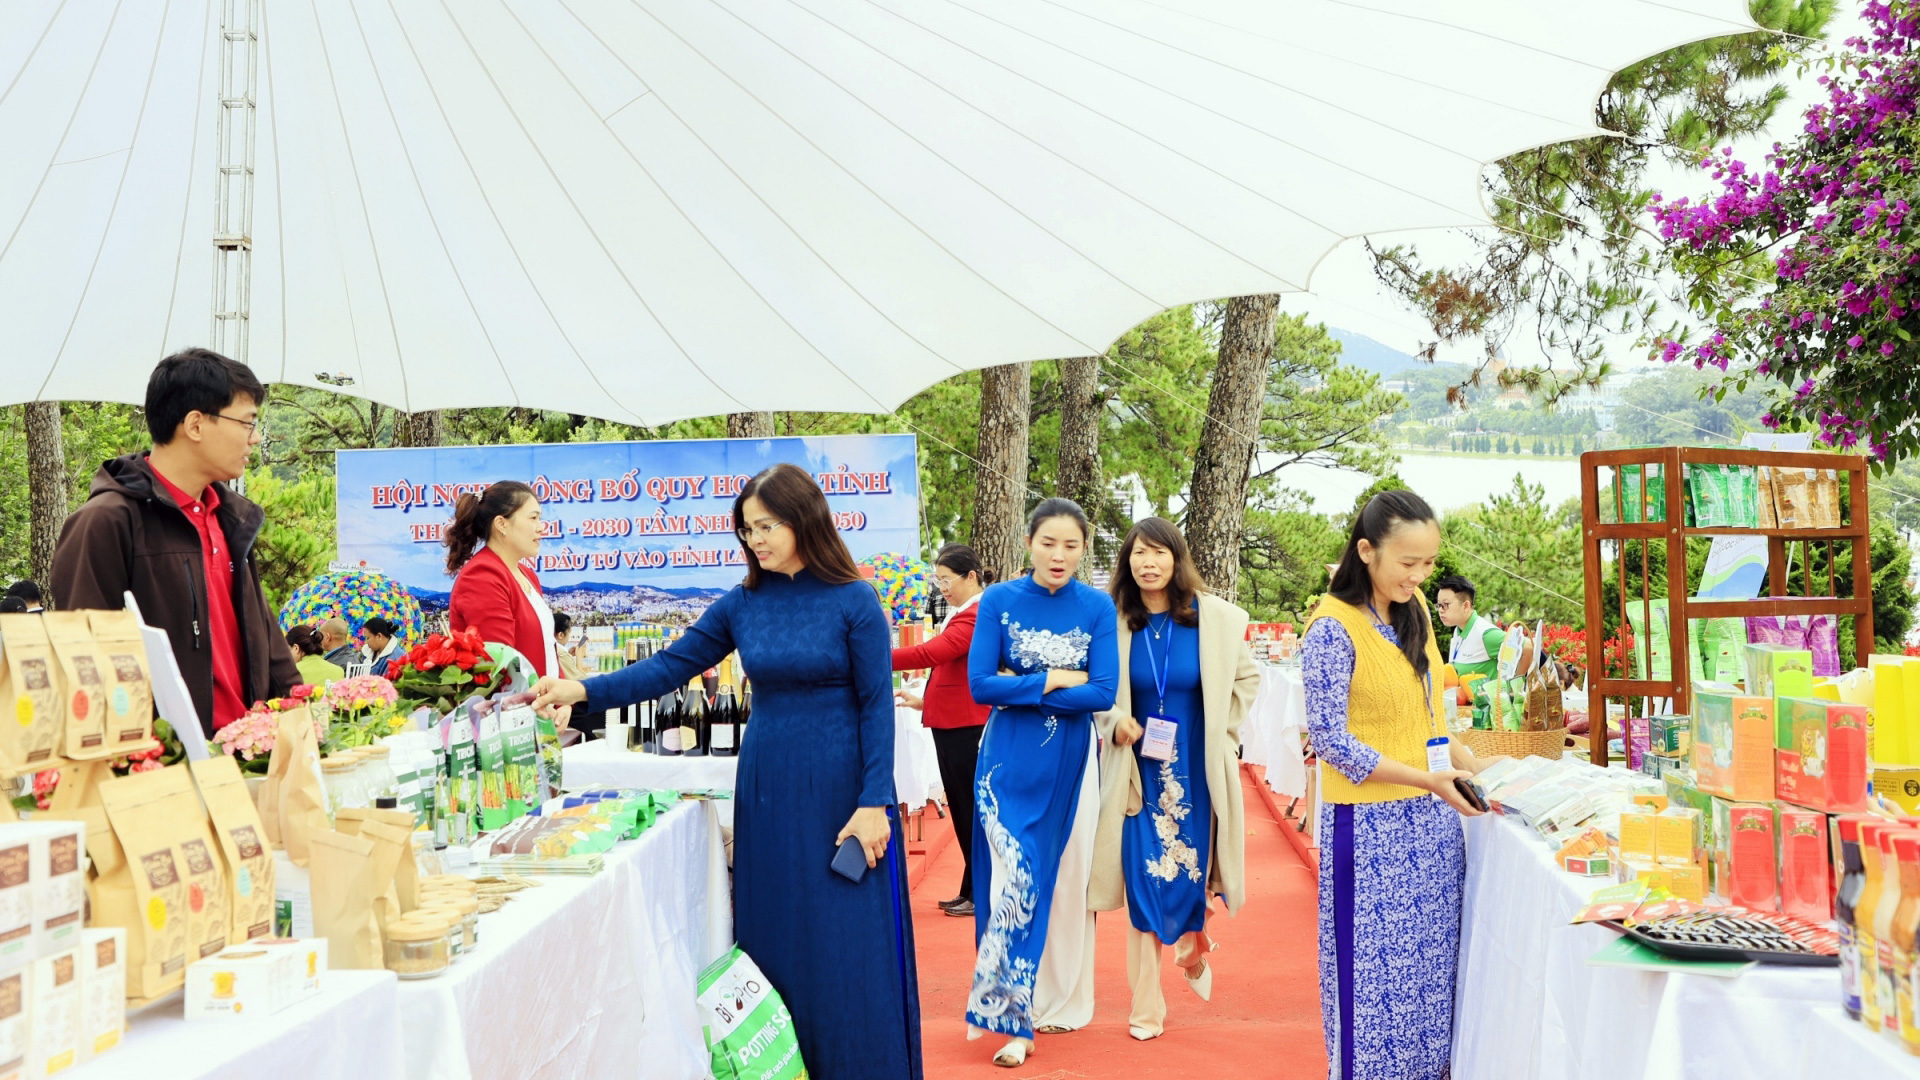 30 đơn vị quảng bá giới thiệu sản phẩm trong Hội nghị Công bố Quy hoạch tỉnh Lâm Đồng và Vùng Tây Nguyên